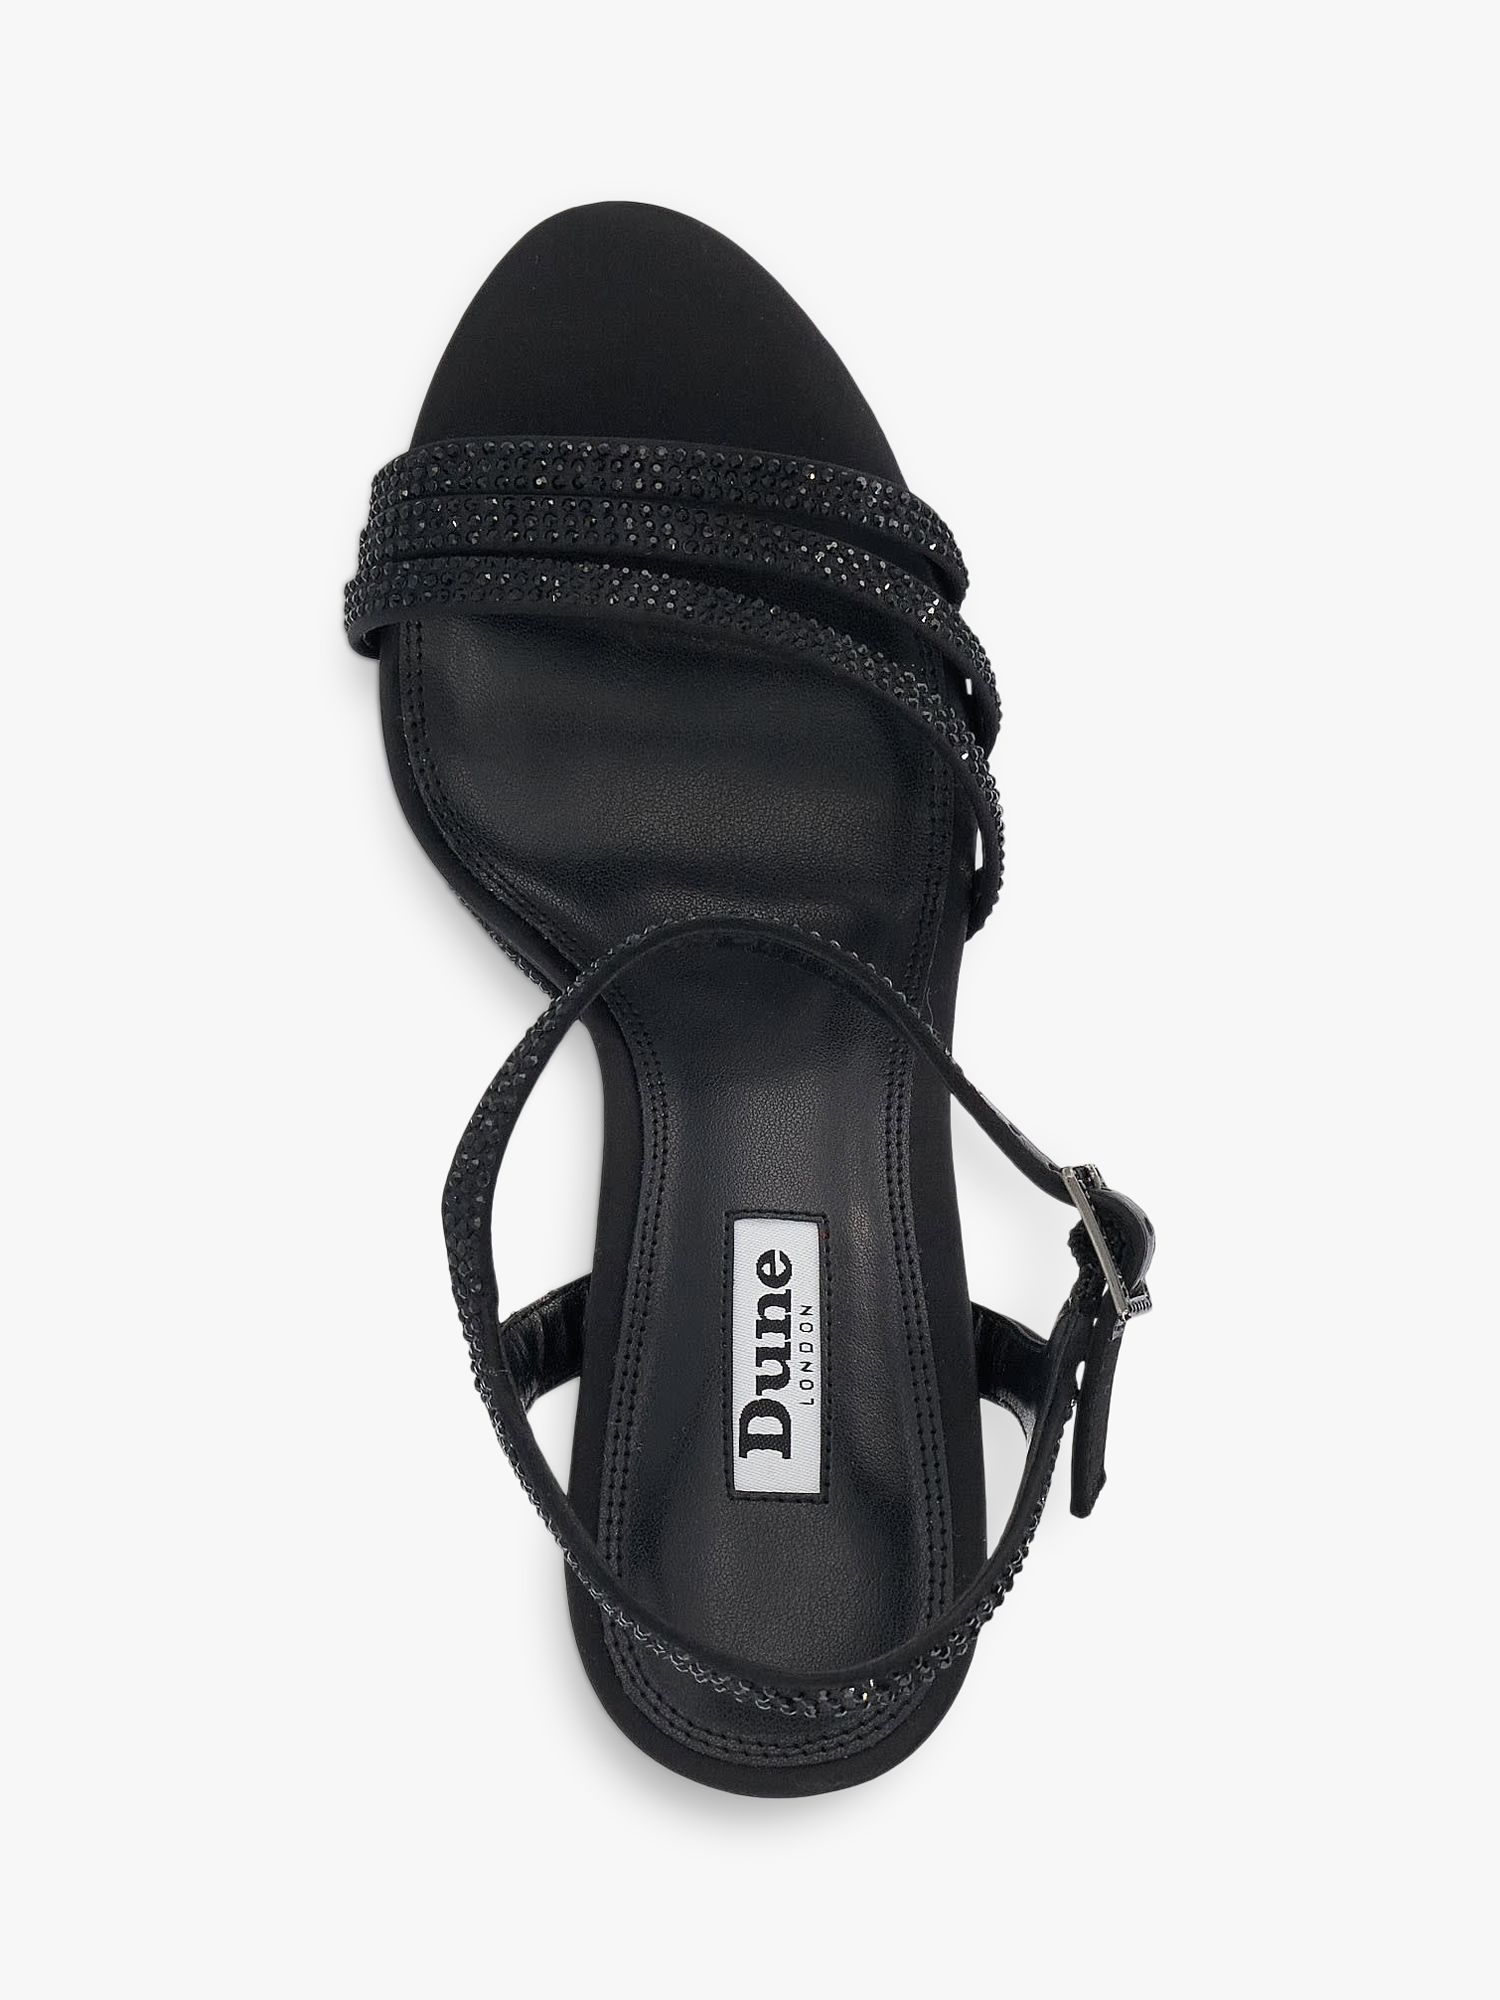 Dune Mulberrie Diamante Embellished Platform Sandals, Black, EU36